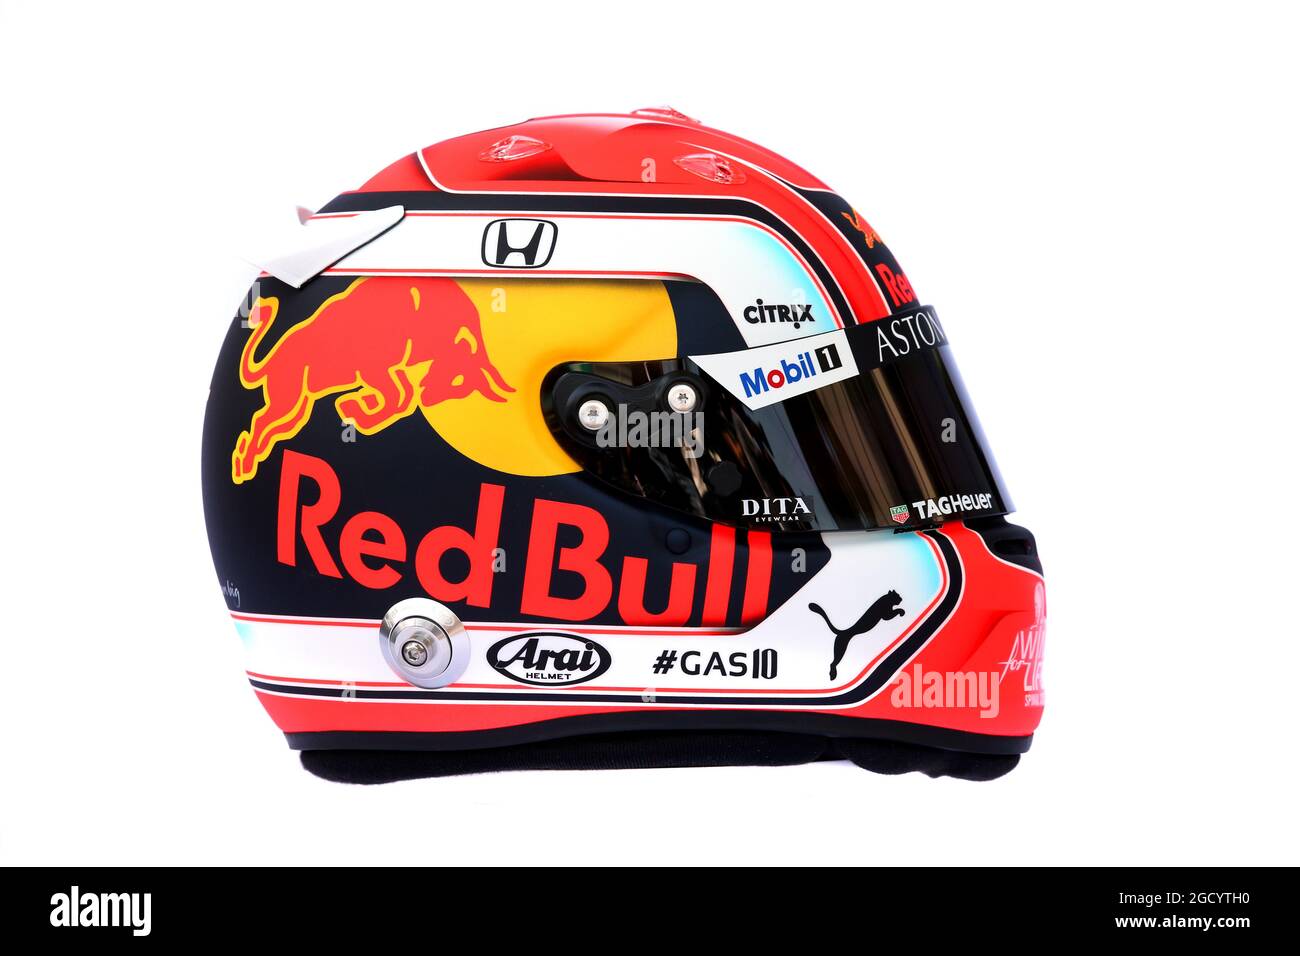 Red bull helmet f1 Banque d'images détourées - Alamy